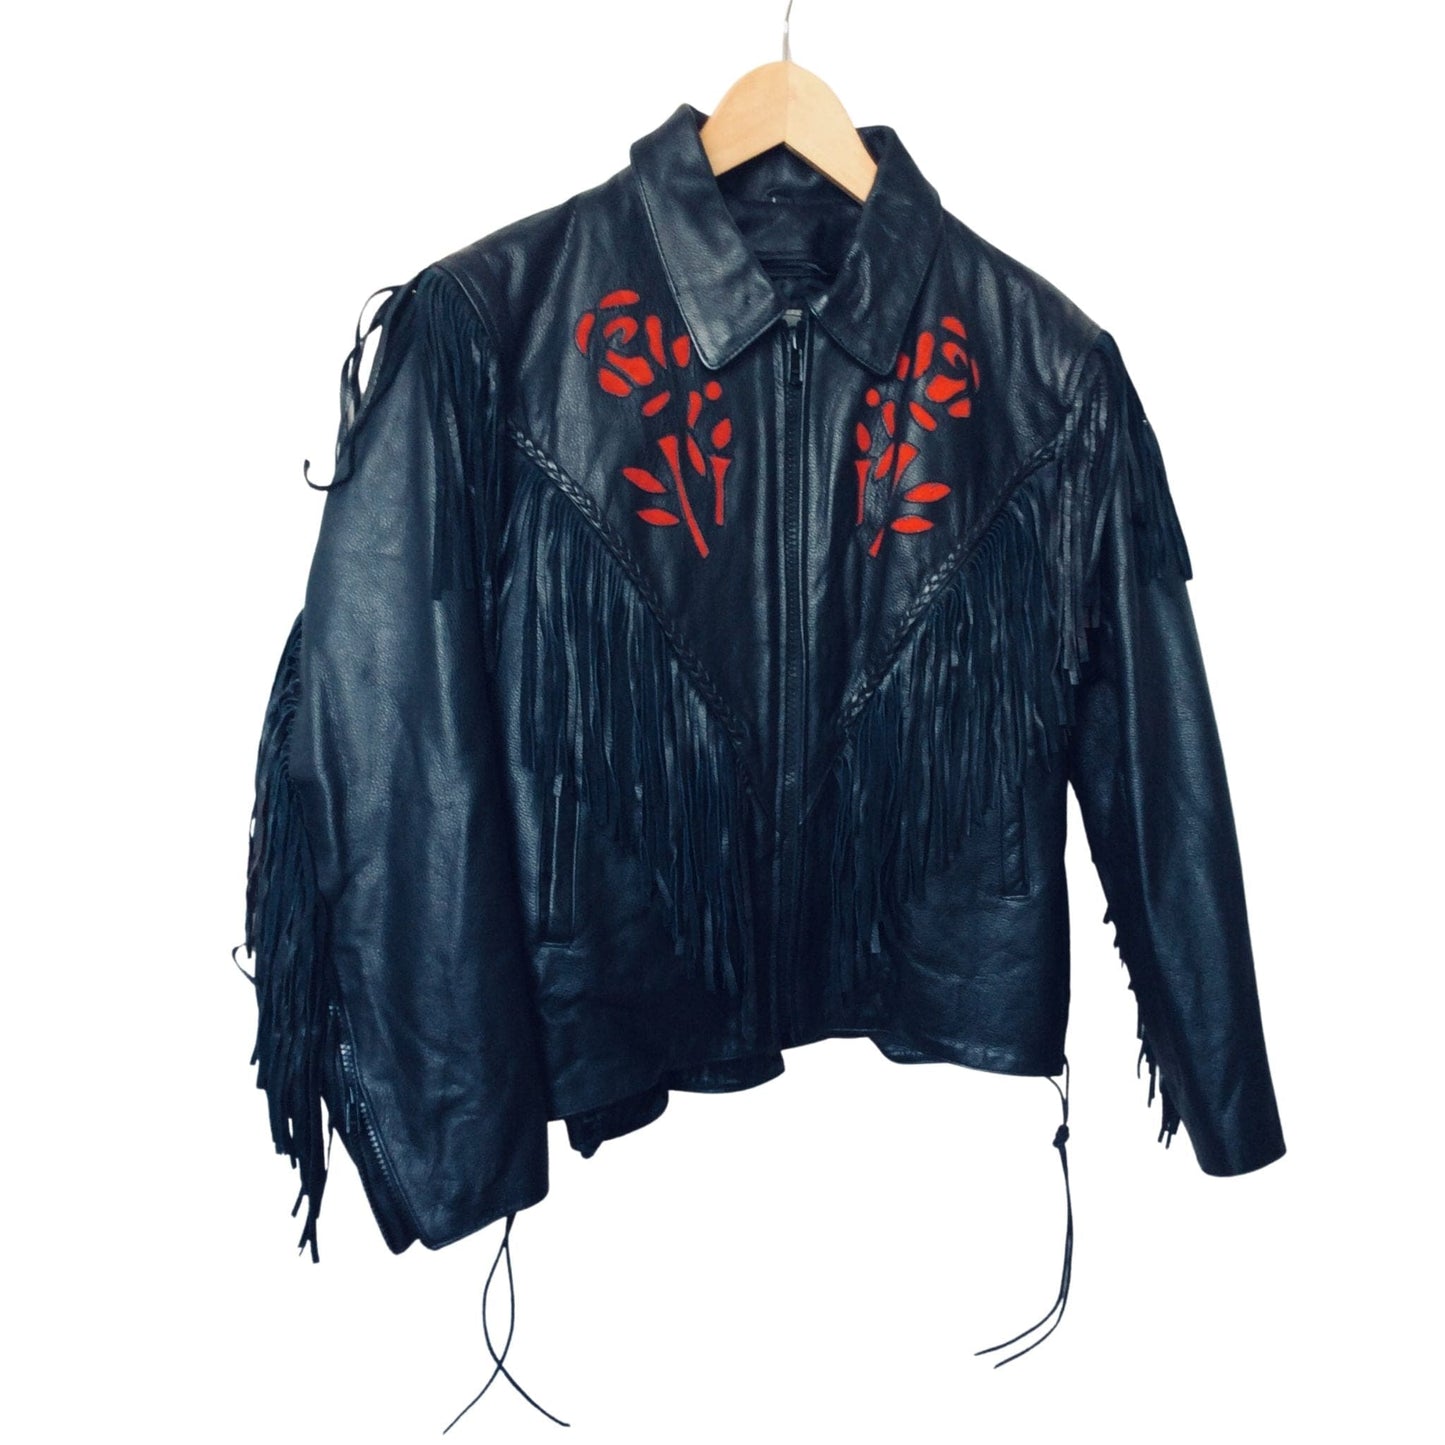 Vintage Fringed Moto Jacket Medium / Black / Vintage 1980s